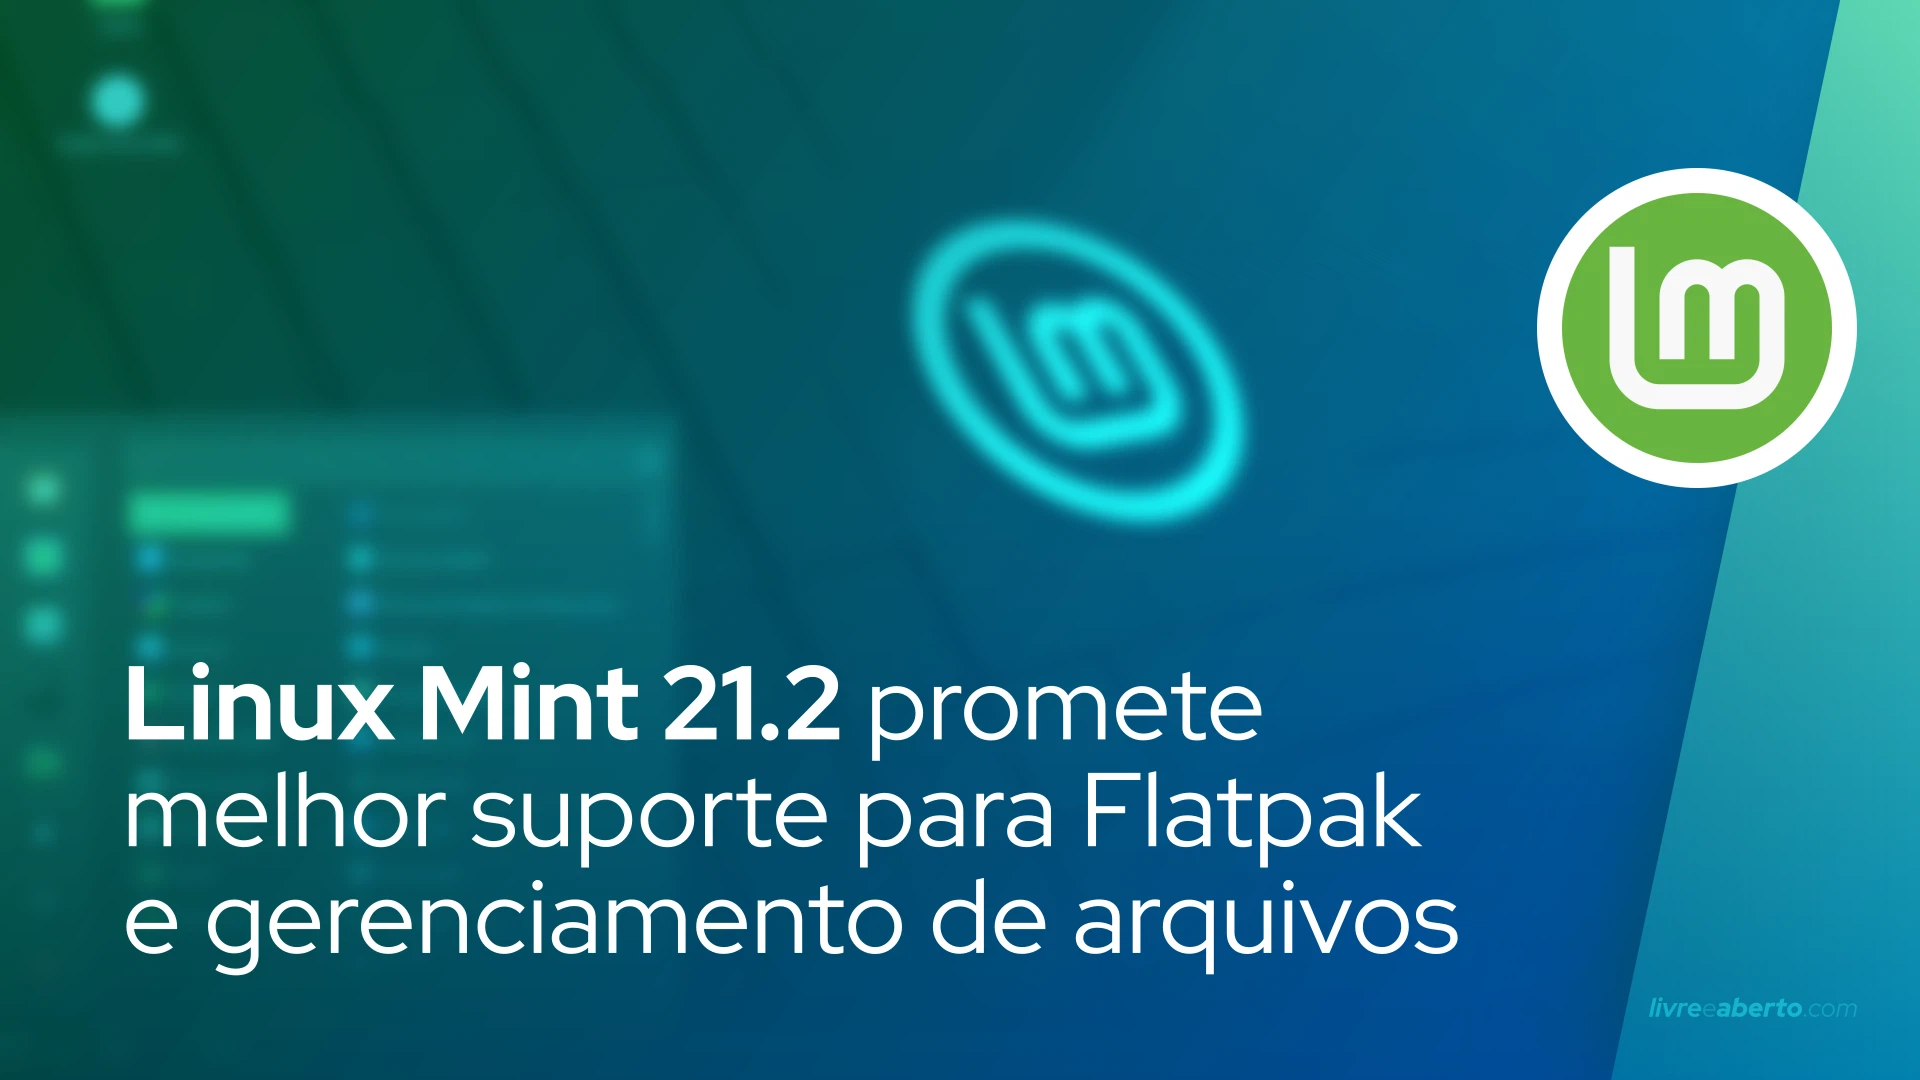 Linux Mint 21.2 promete melhor suporte para aplicativos Flatpak, gerenciamento de arquivos mais rápido